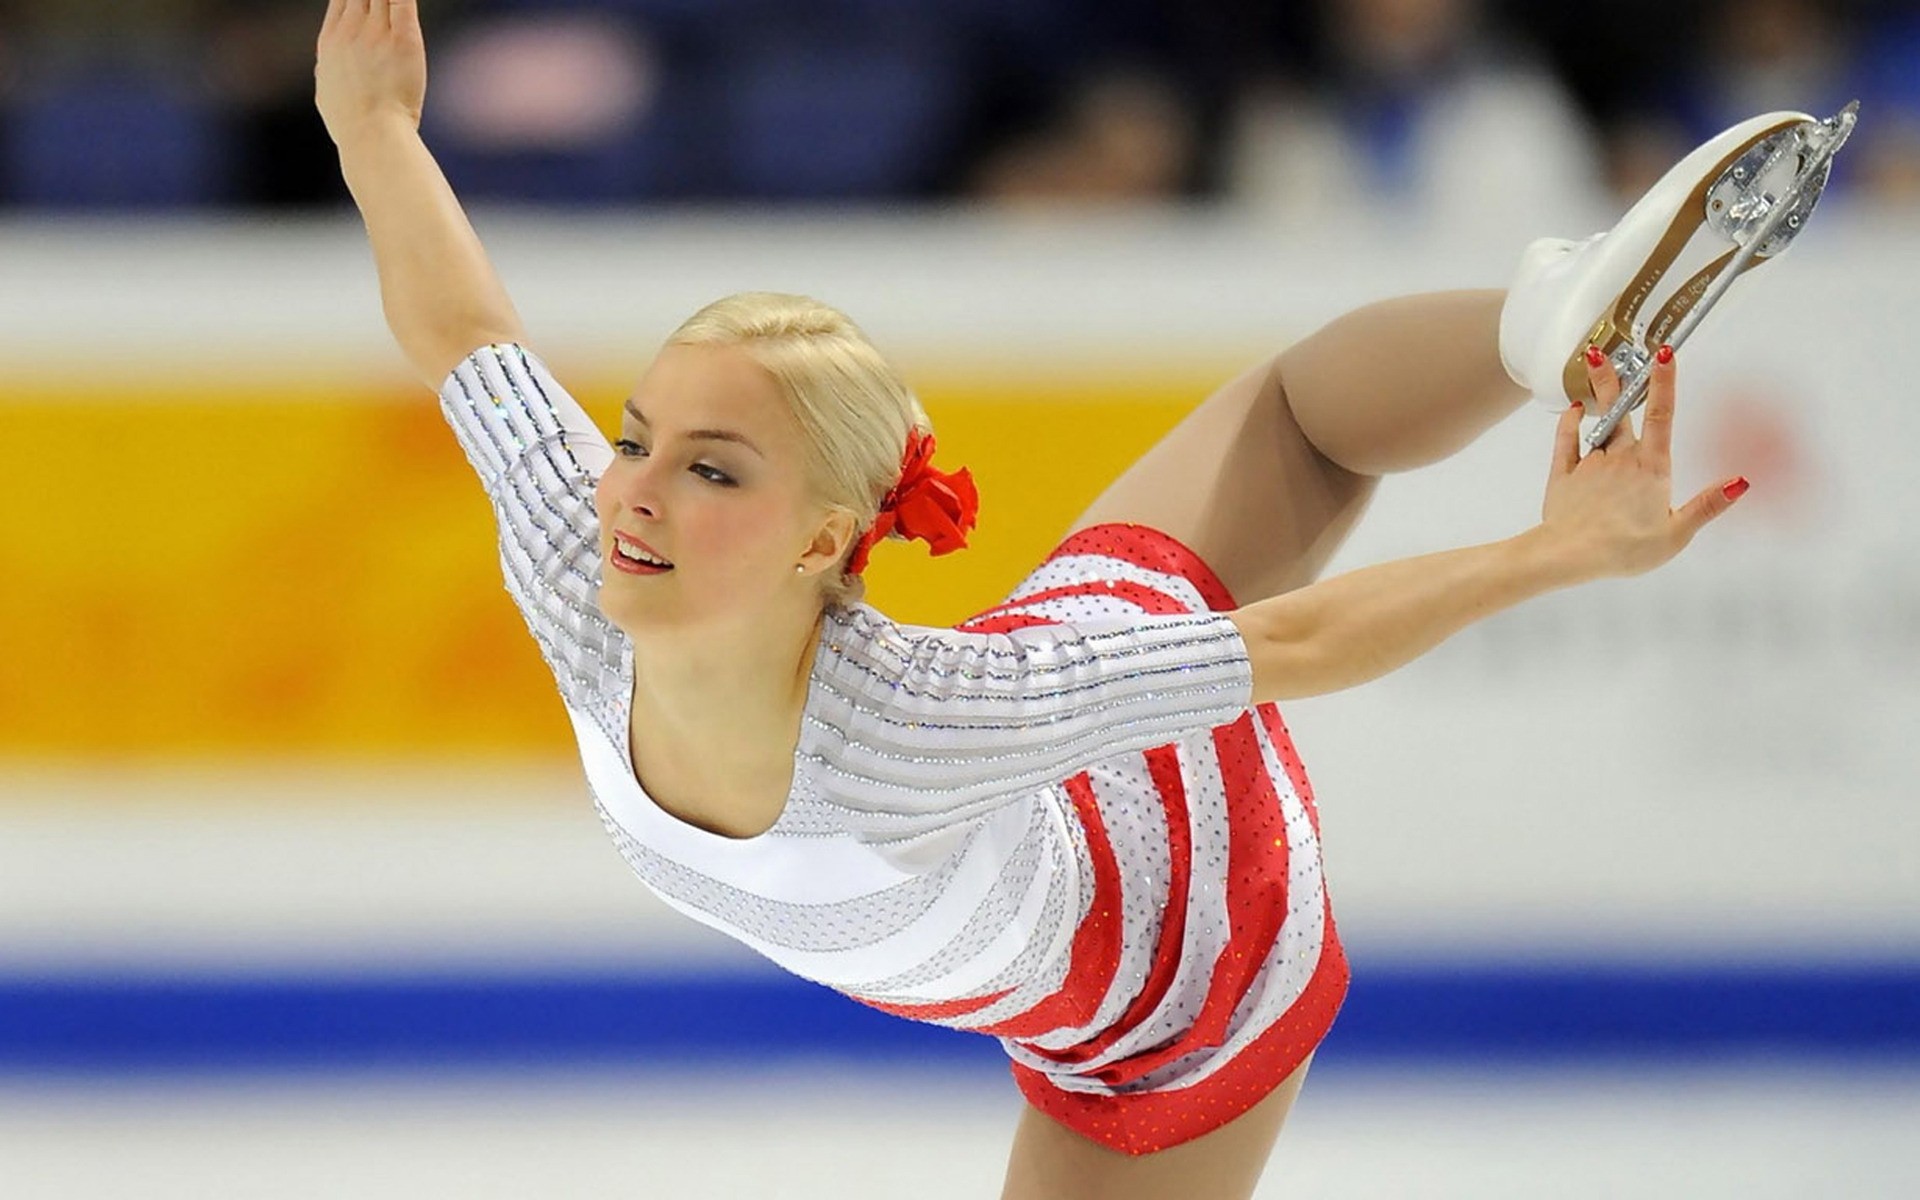 спорт гимнастика спортсмен конкурс взрослый сила упражнения чемпионат женщина класс искусство фигура катание на коньках лед белый блондинка